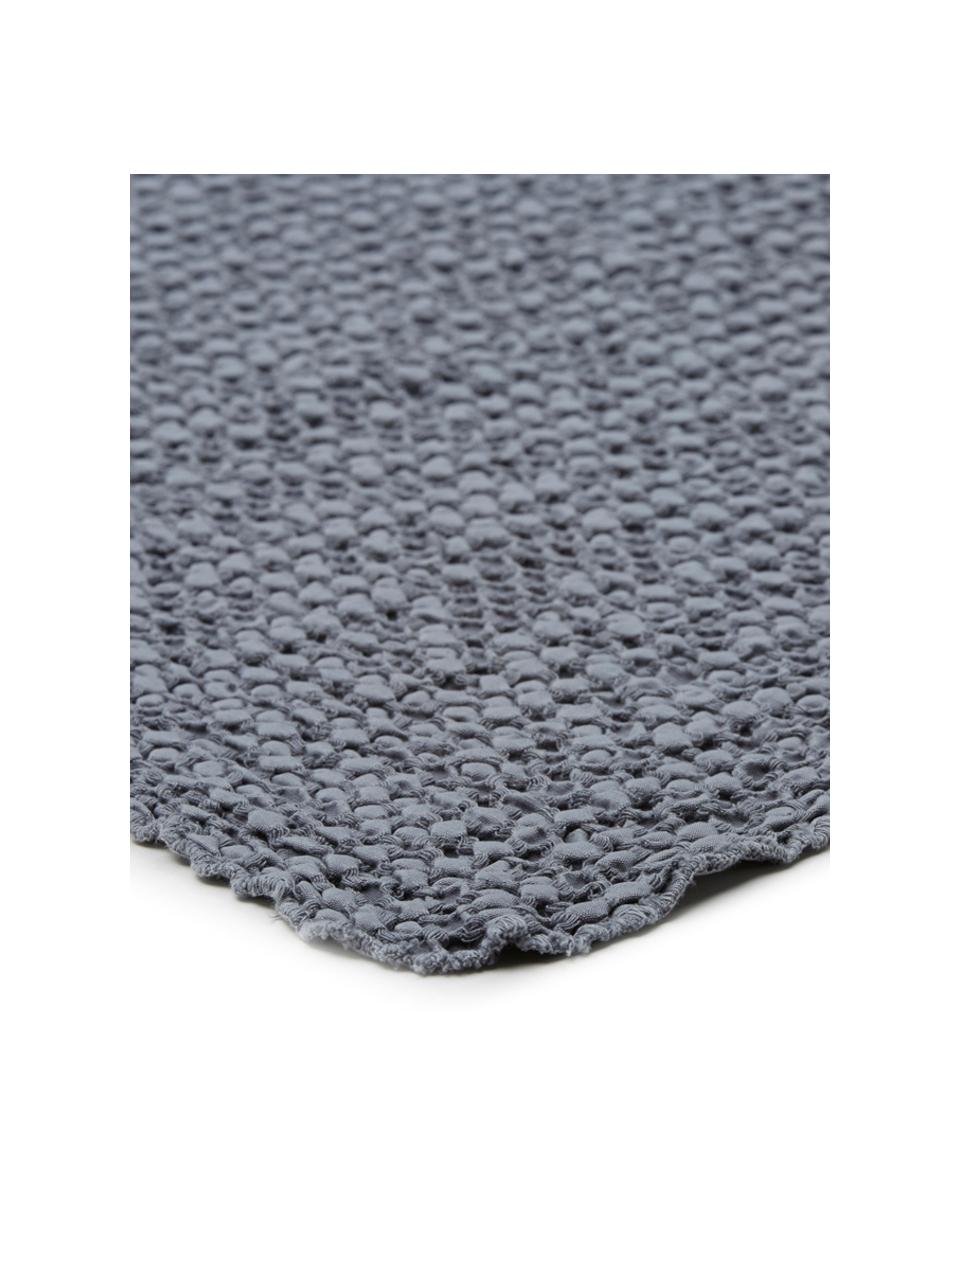 Tagesdecke Vigo mit strukturierter Oberfläche, 100% Baumwolle, Dunkelblau, B 220 x L 240 cm (für Betten bis 180 x 200 cm)